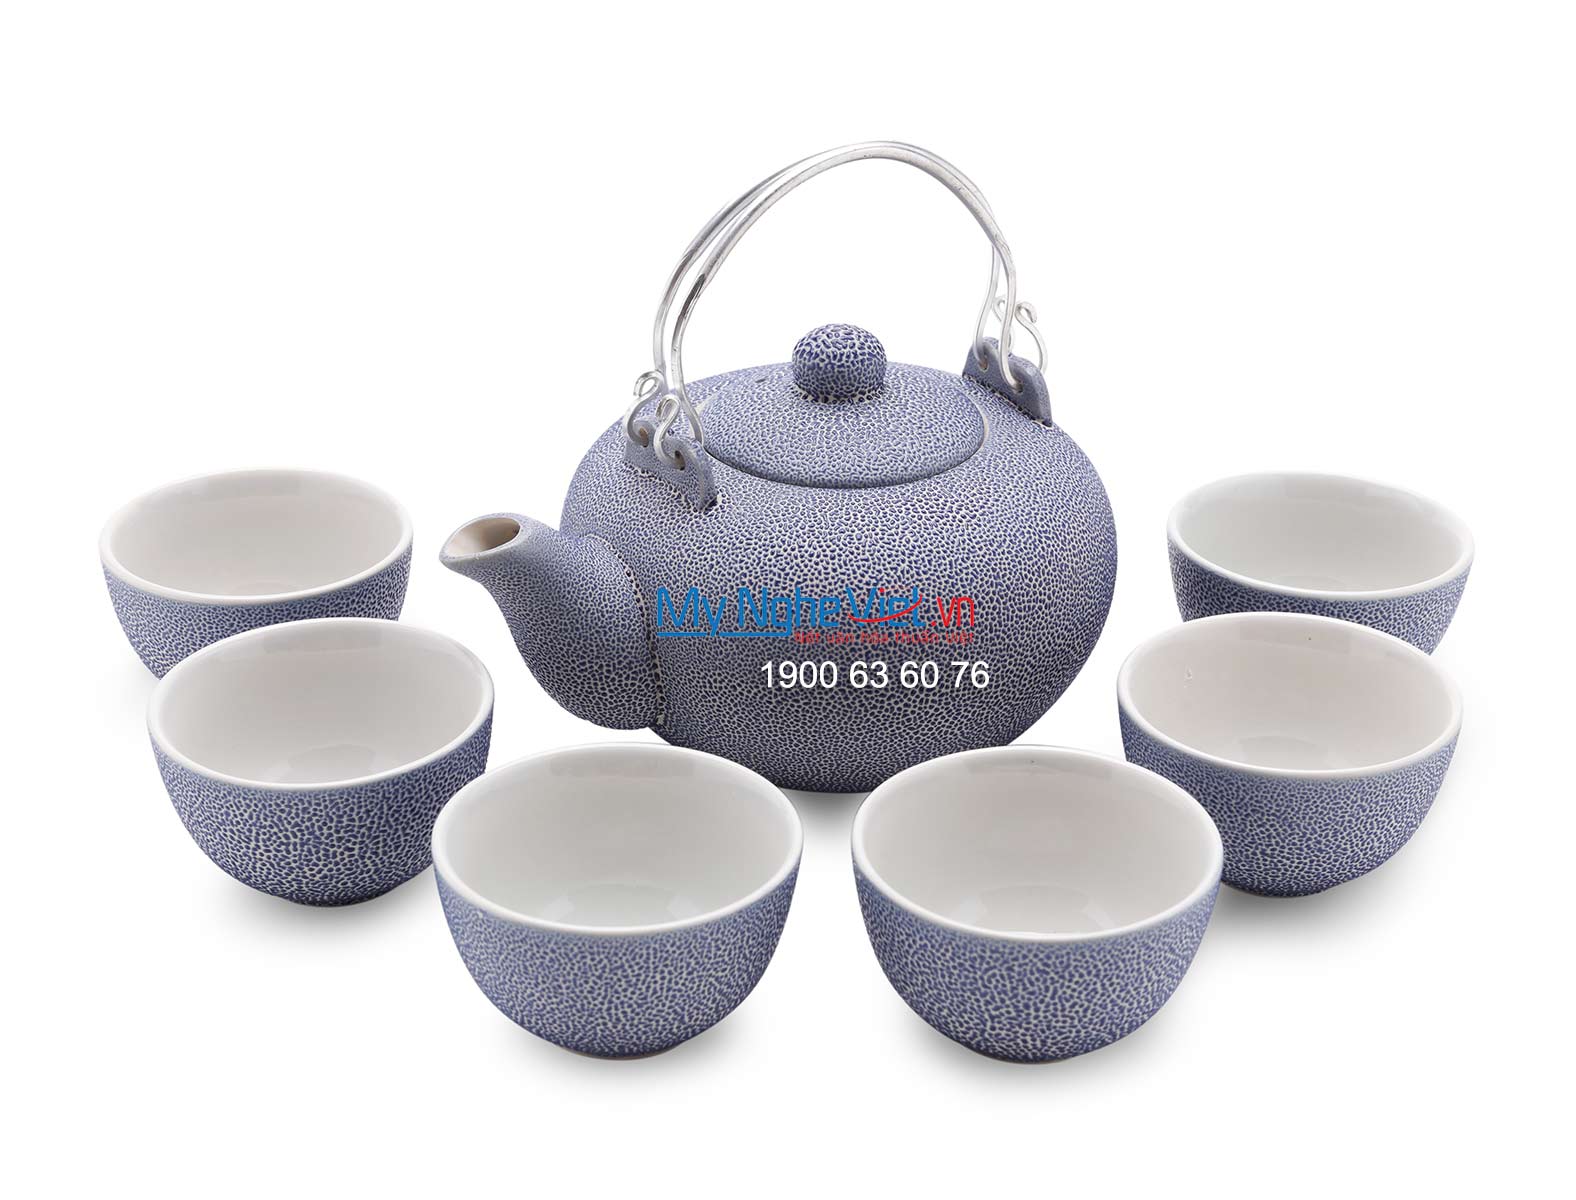 Bộ bình trà Bát Tràng men co xanh MNV-BT151